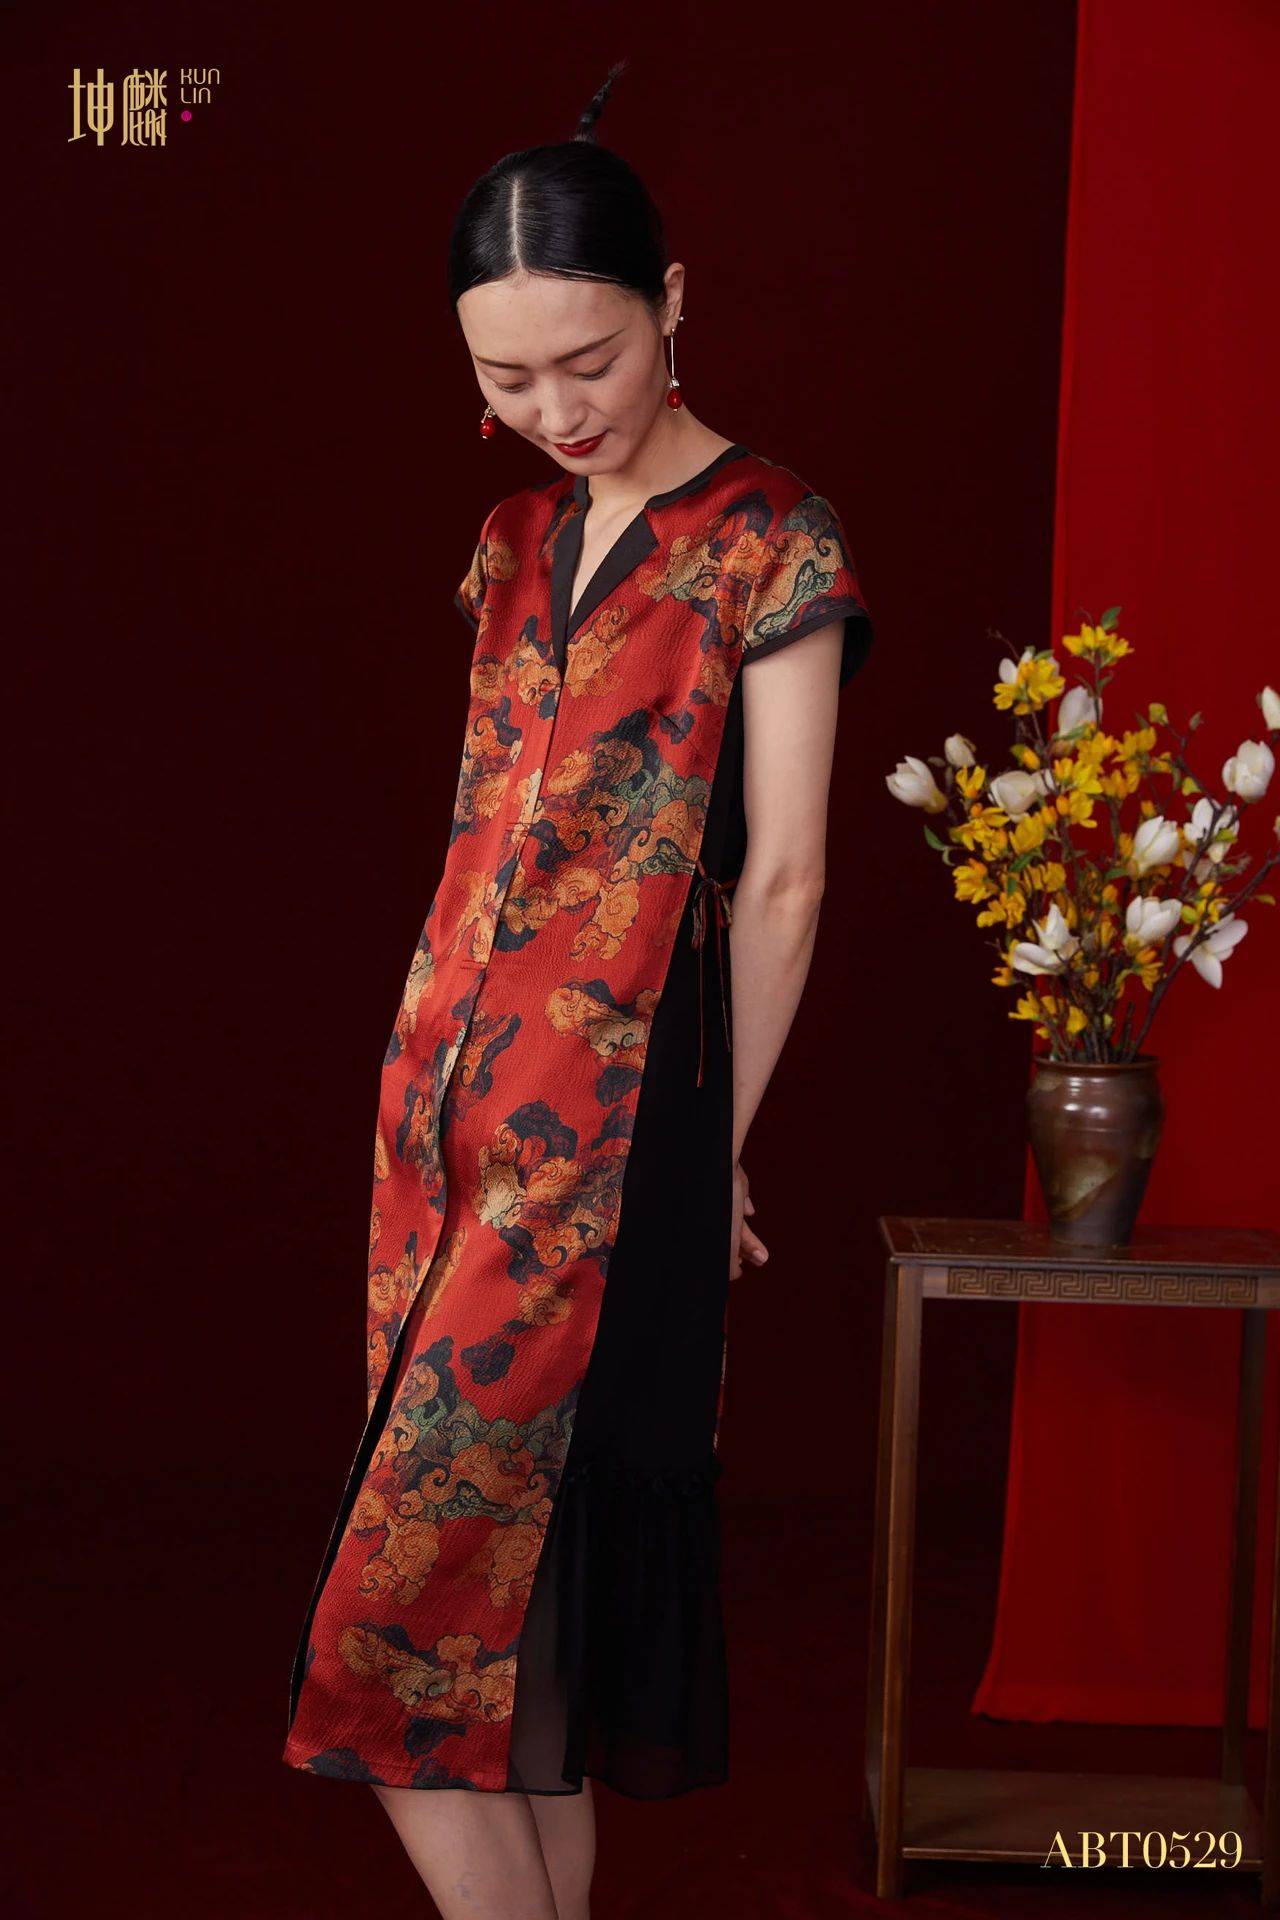 之际邀请您共同欣赏真丝艺术之美看得见的美丽,看不见的舒适杭州丝绸